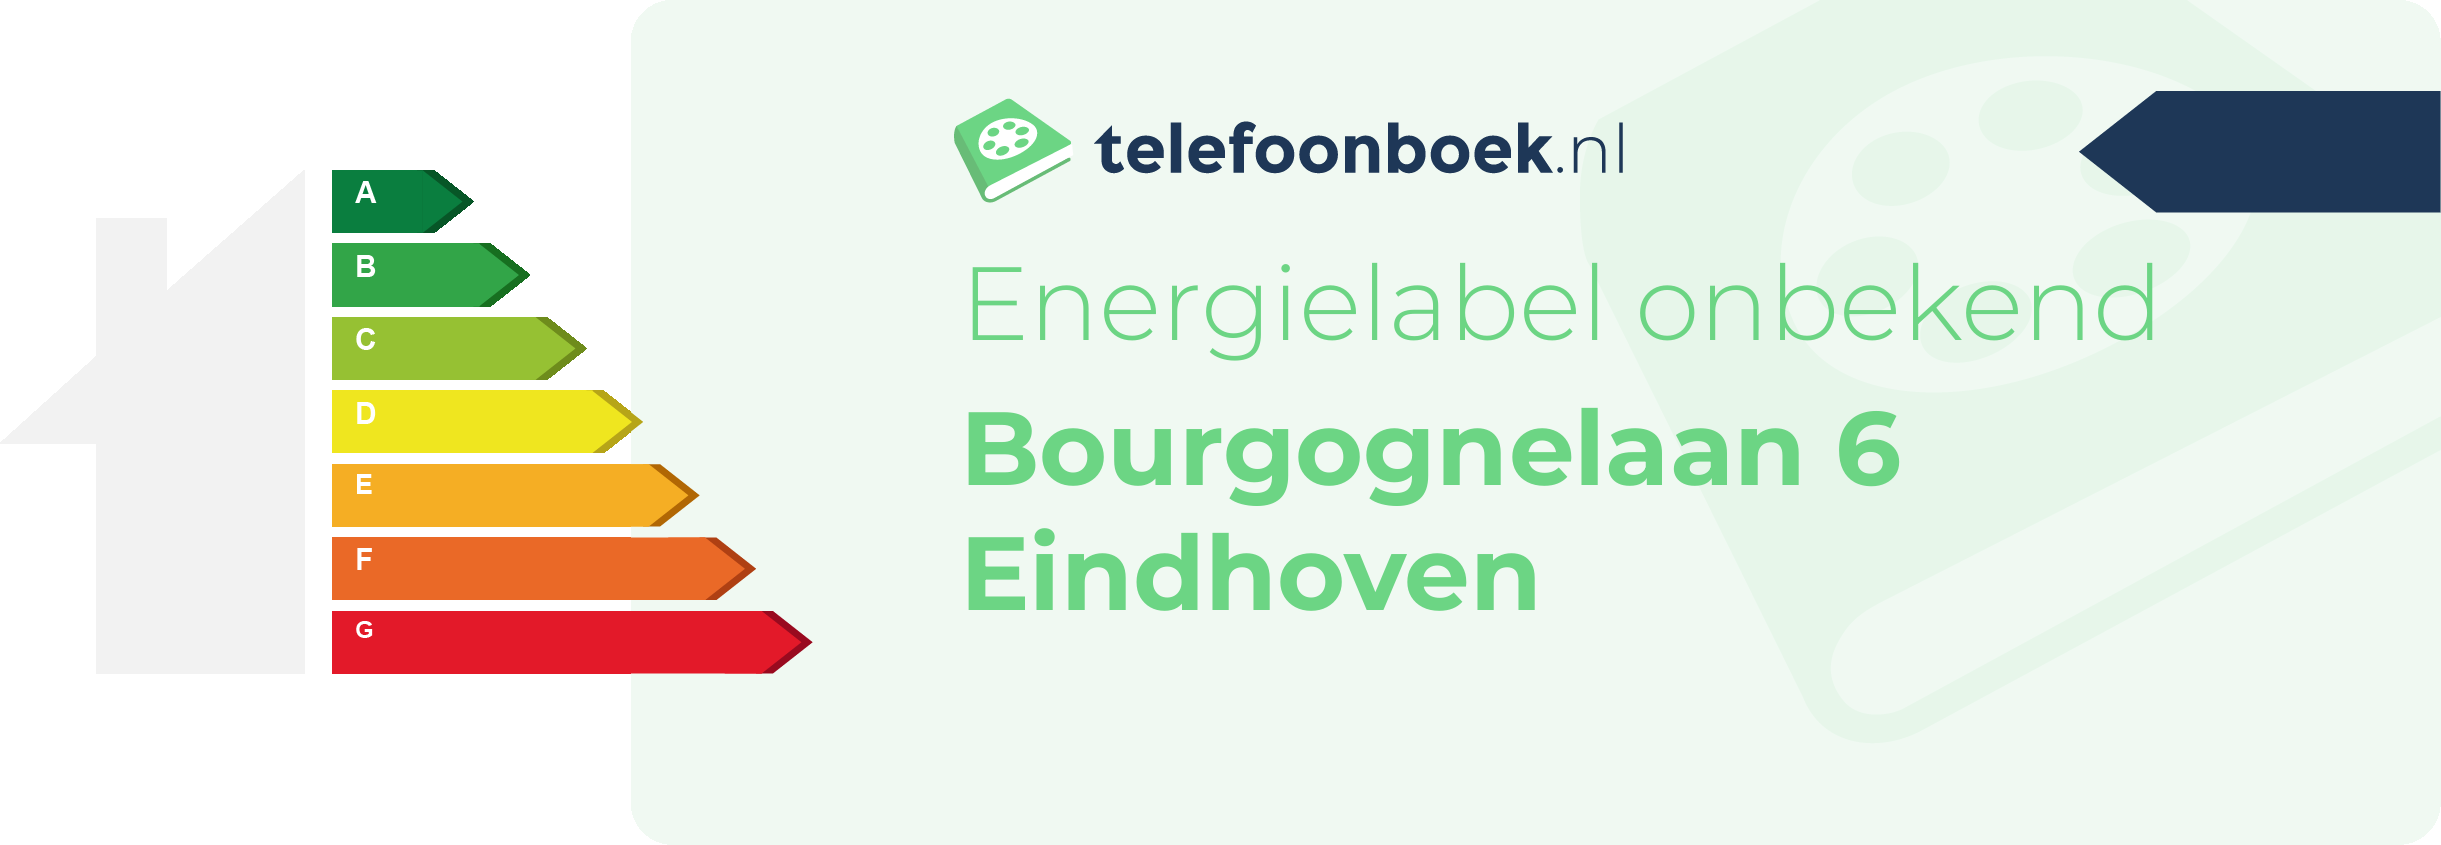 Energielabel Bourgognelaan 6 Eindhoven